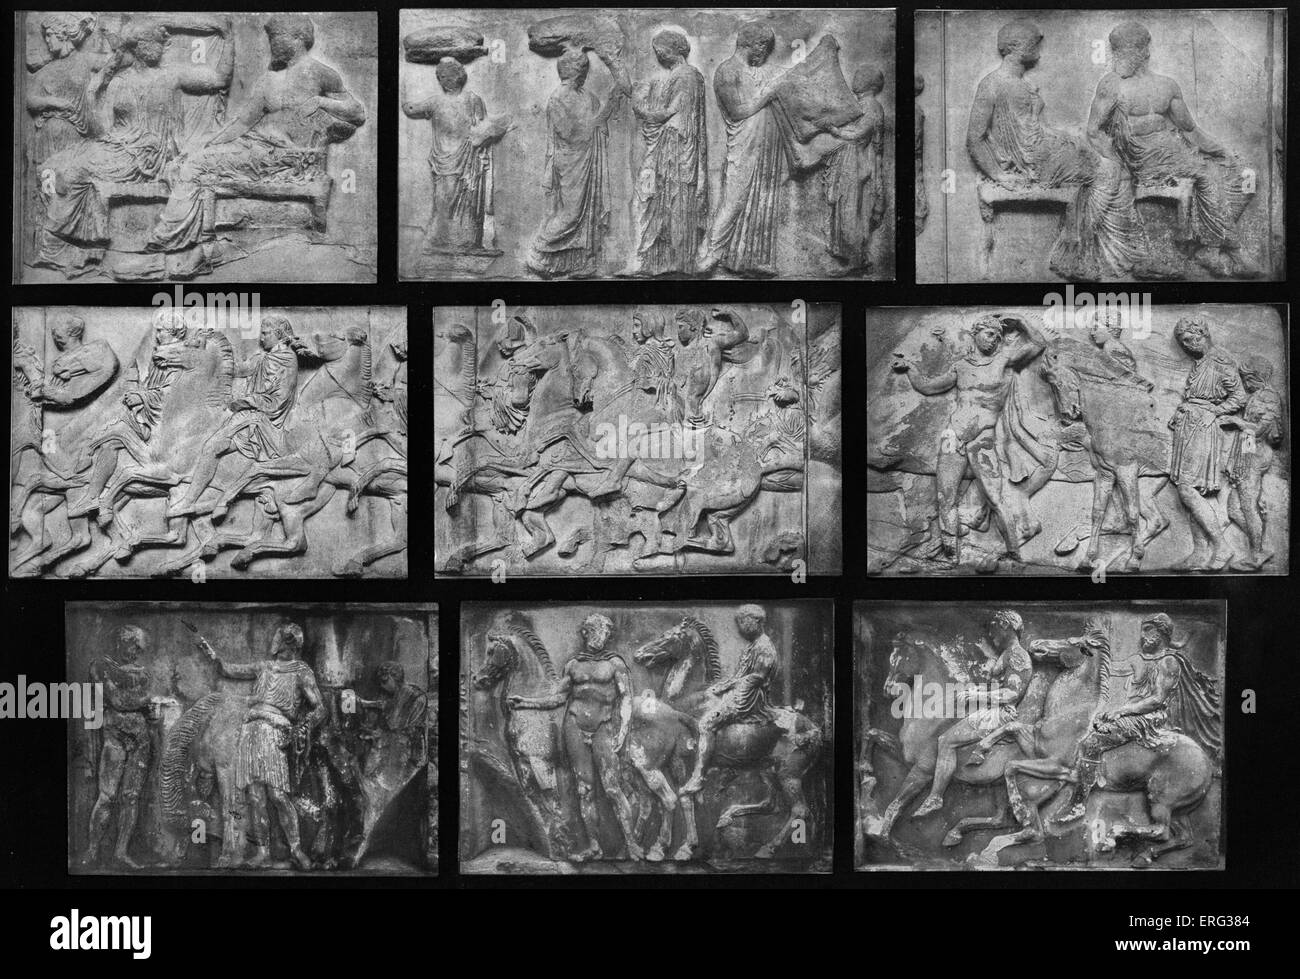 Reliefskulptur aus dem Parthenon-Fries von der Akropolis in Athen, Griechenland.  Abgebildeten: Pilger und Gläubige an der Stockfoto